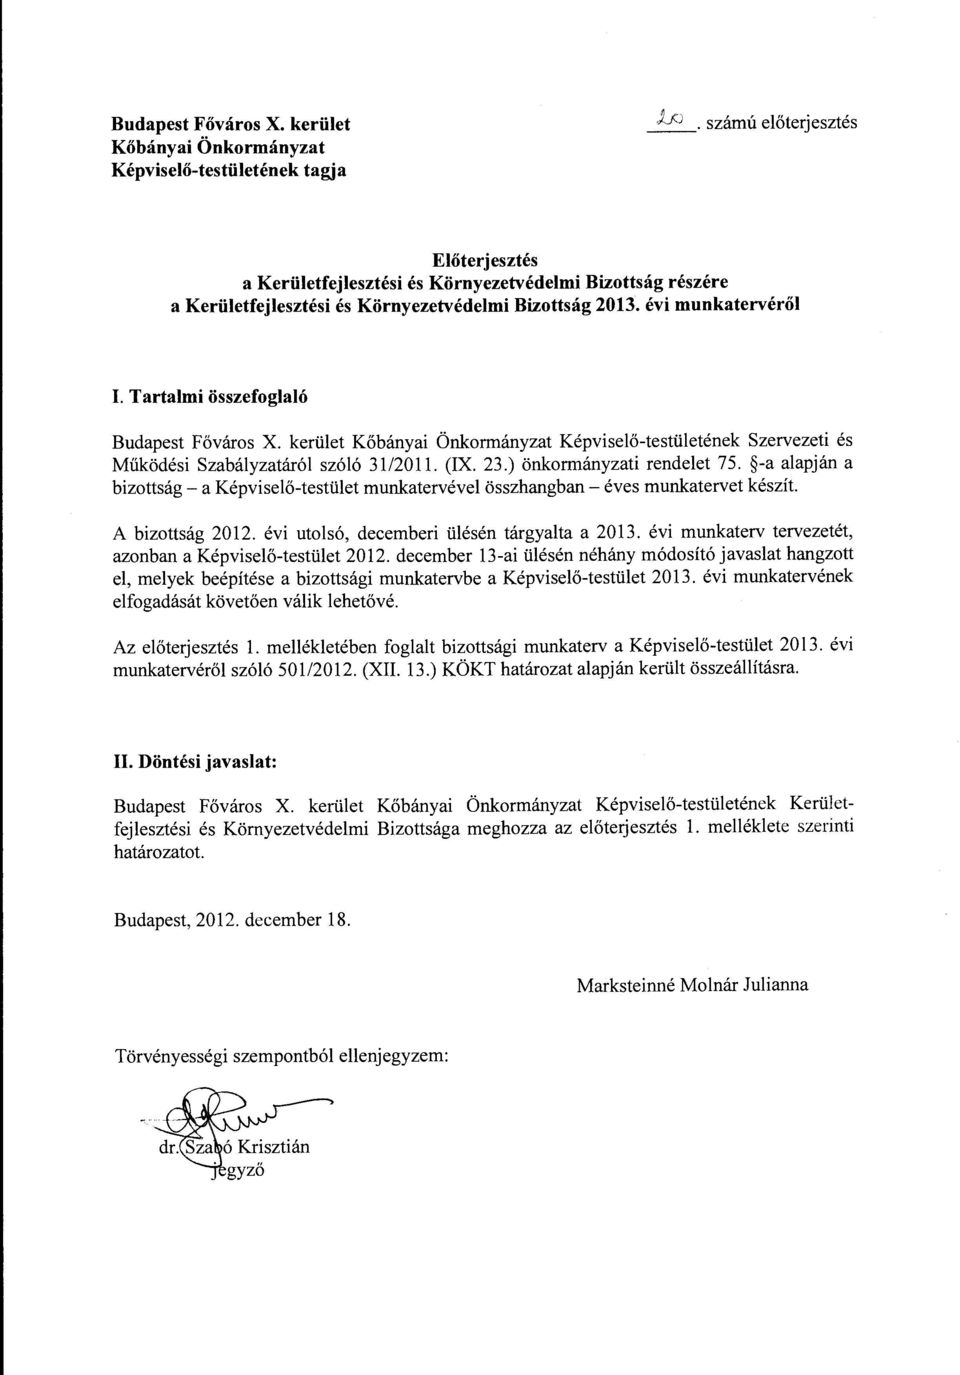 Tartalmi összefoglaló Budapest Főváros X. kerület Kőbányai Önkormányzat Képviselő-testületének Szervezeti és Működési Szabályzatáról szóló 31/2011. (IX. 23.) önkormányzati rendelet 75.